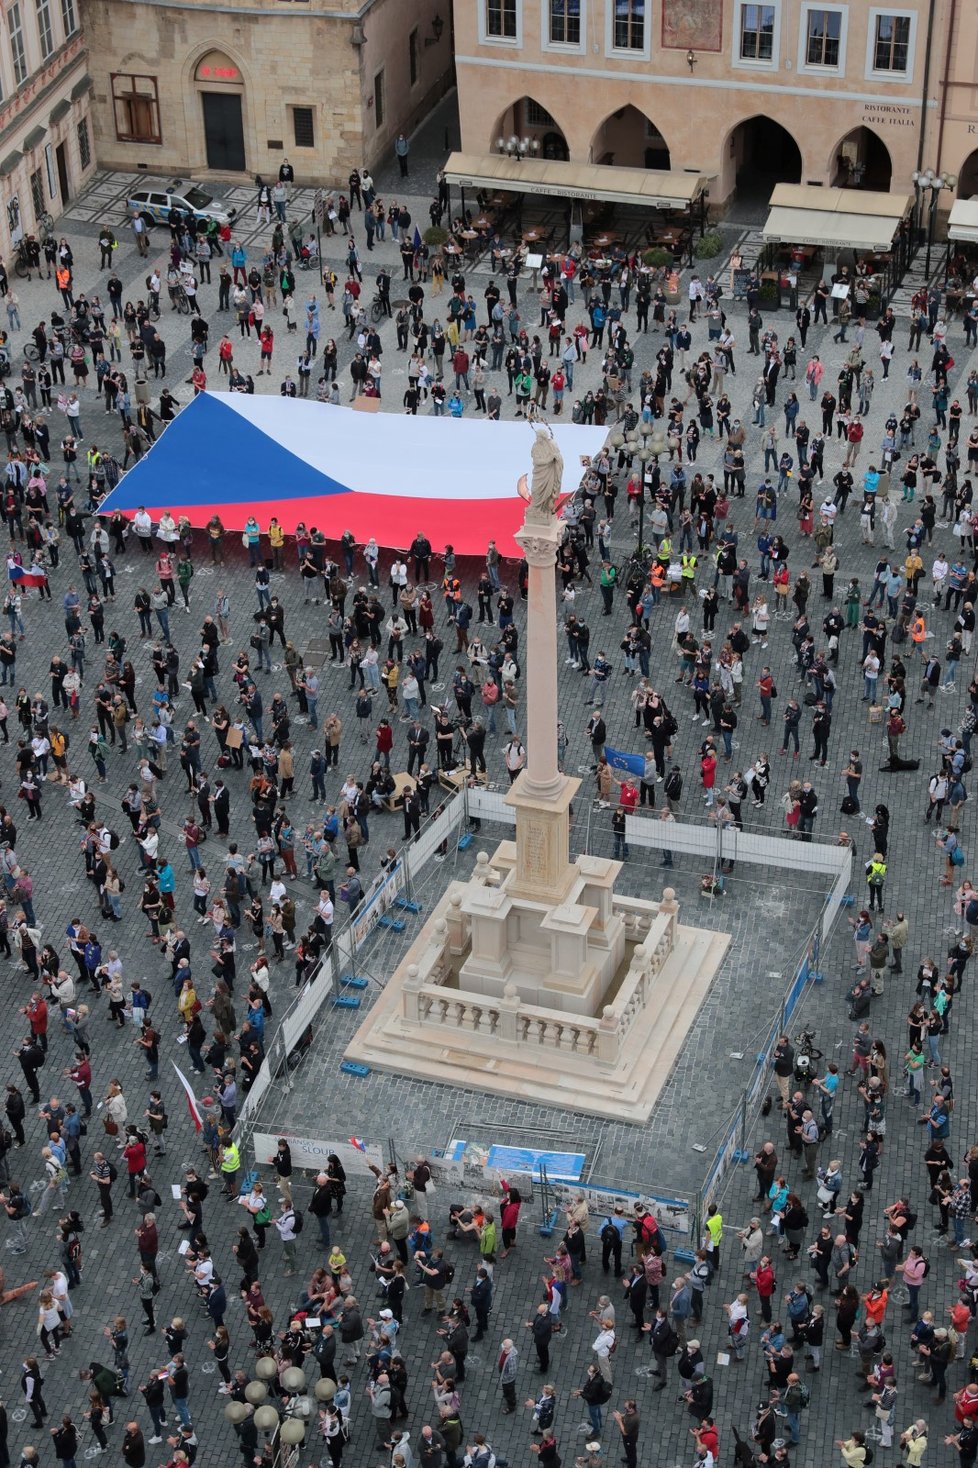 Demonstrující na Staroměstském náměstí na protestu proti vládě Andreje Babiše (9. 6. 2020)